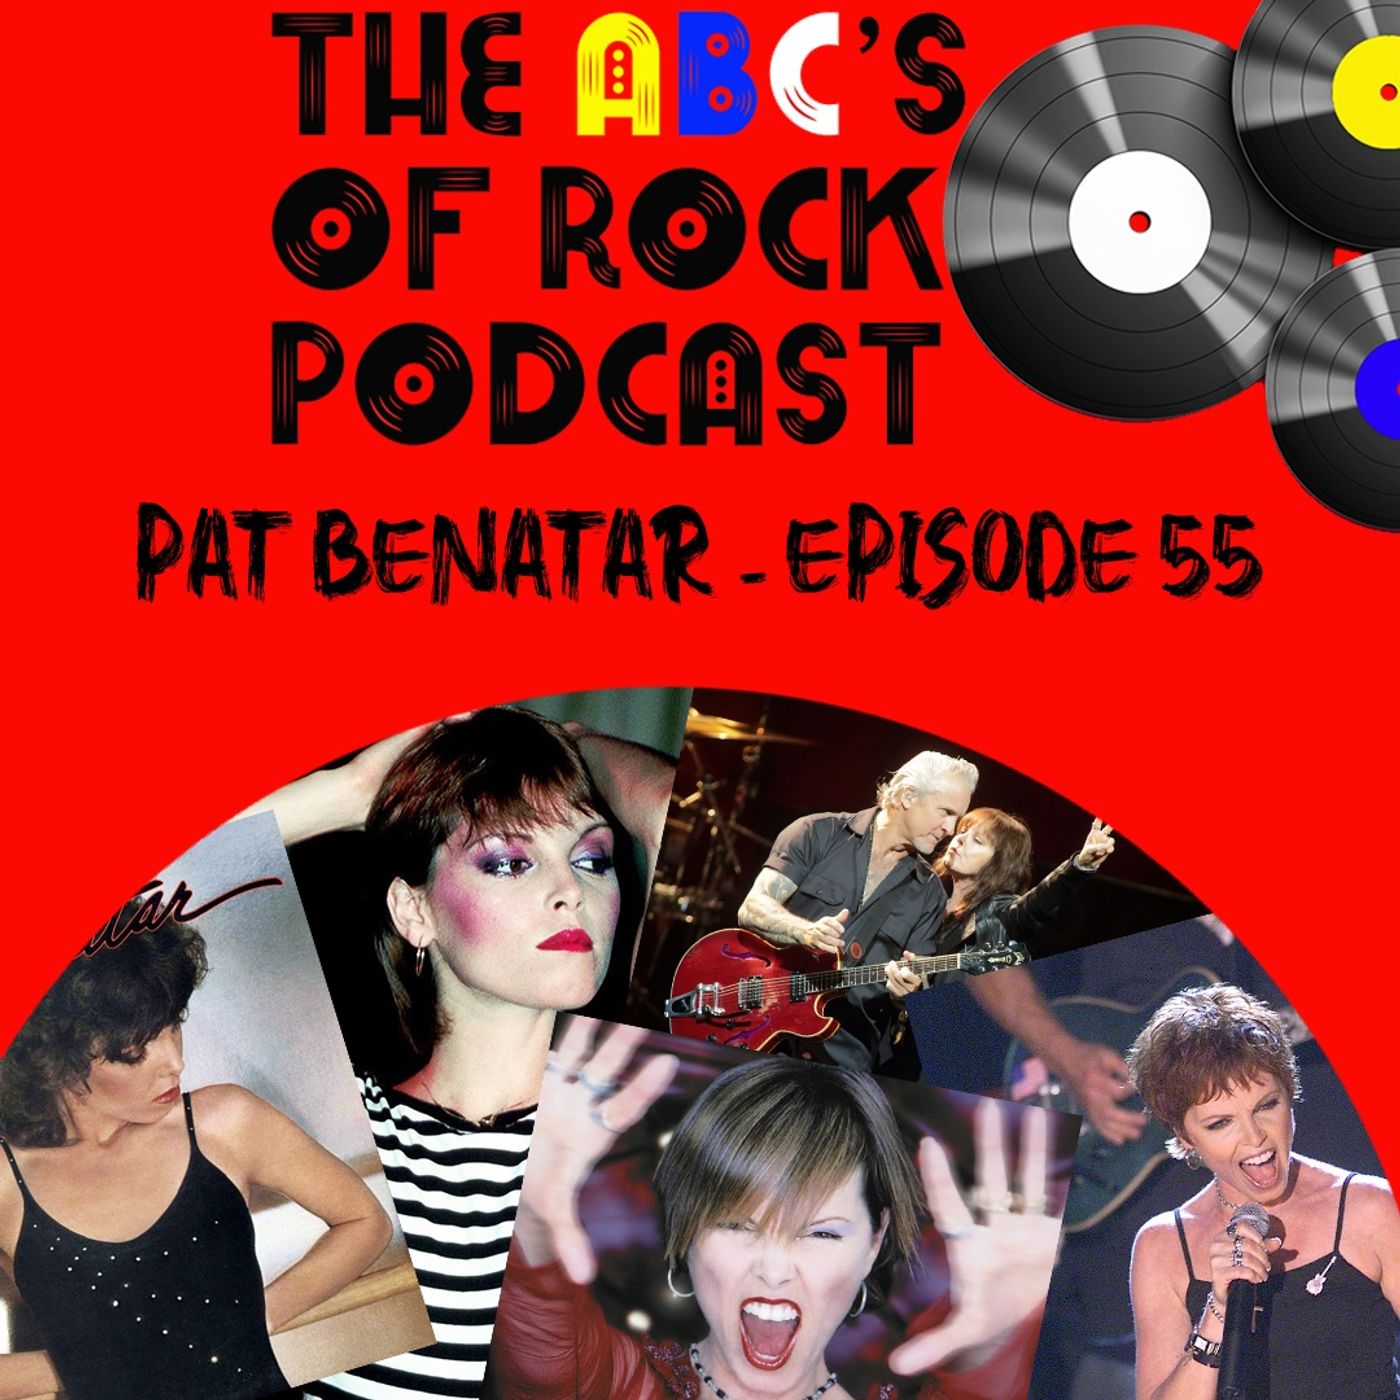 Pat Benatar - "A Toxic Waltz" - Episode 55